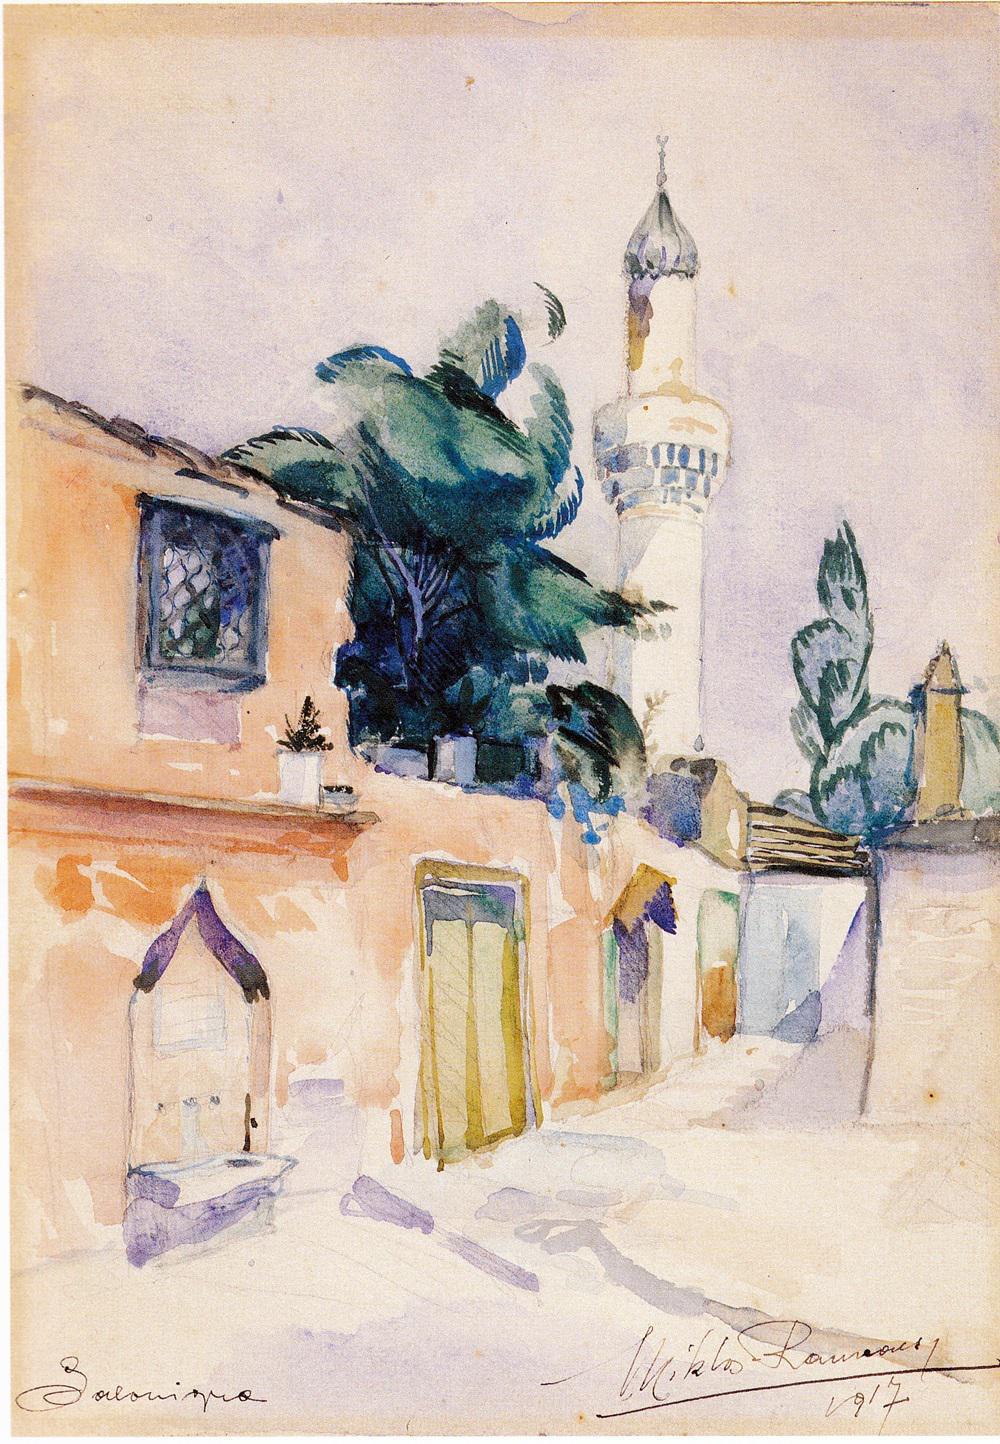 Miklos Rameaux 1917. Η βρύση της οδού Κασσιανής δυτικά του τζαμιού Σουλούκα (Όσιος Δαβίδ).